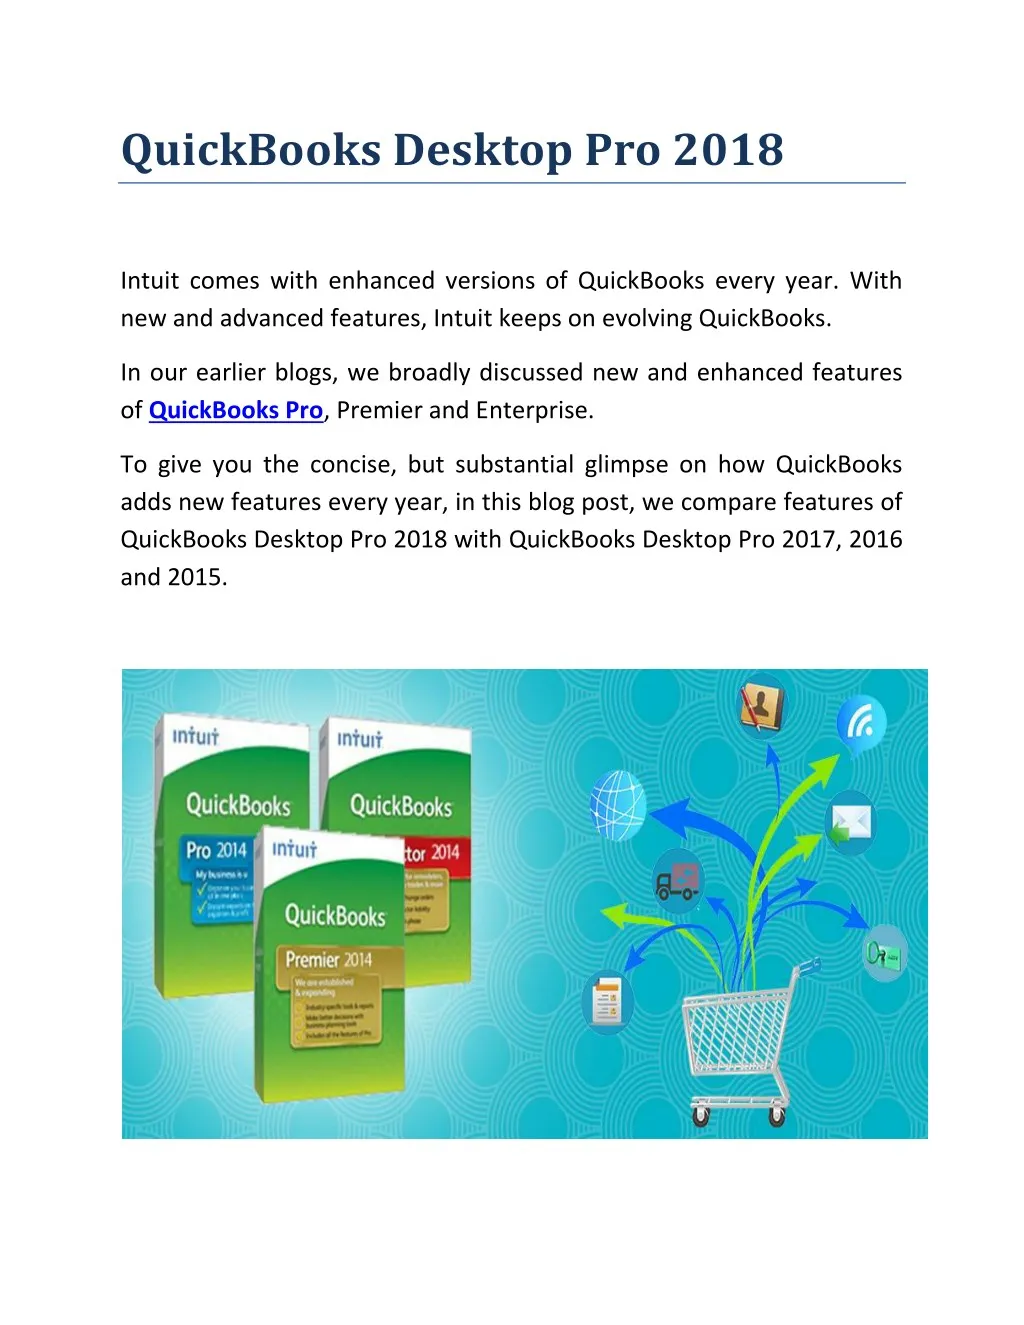 quickbooks desktop pro 2018